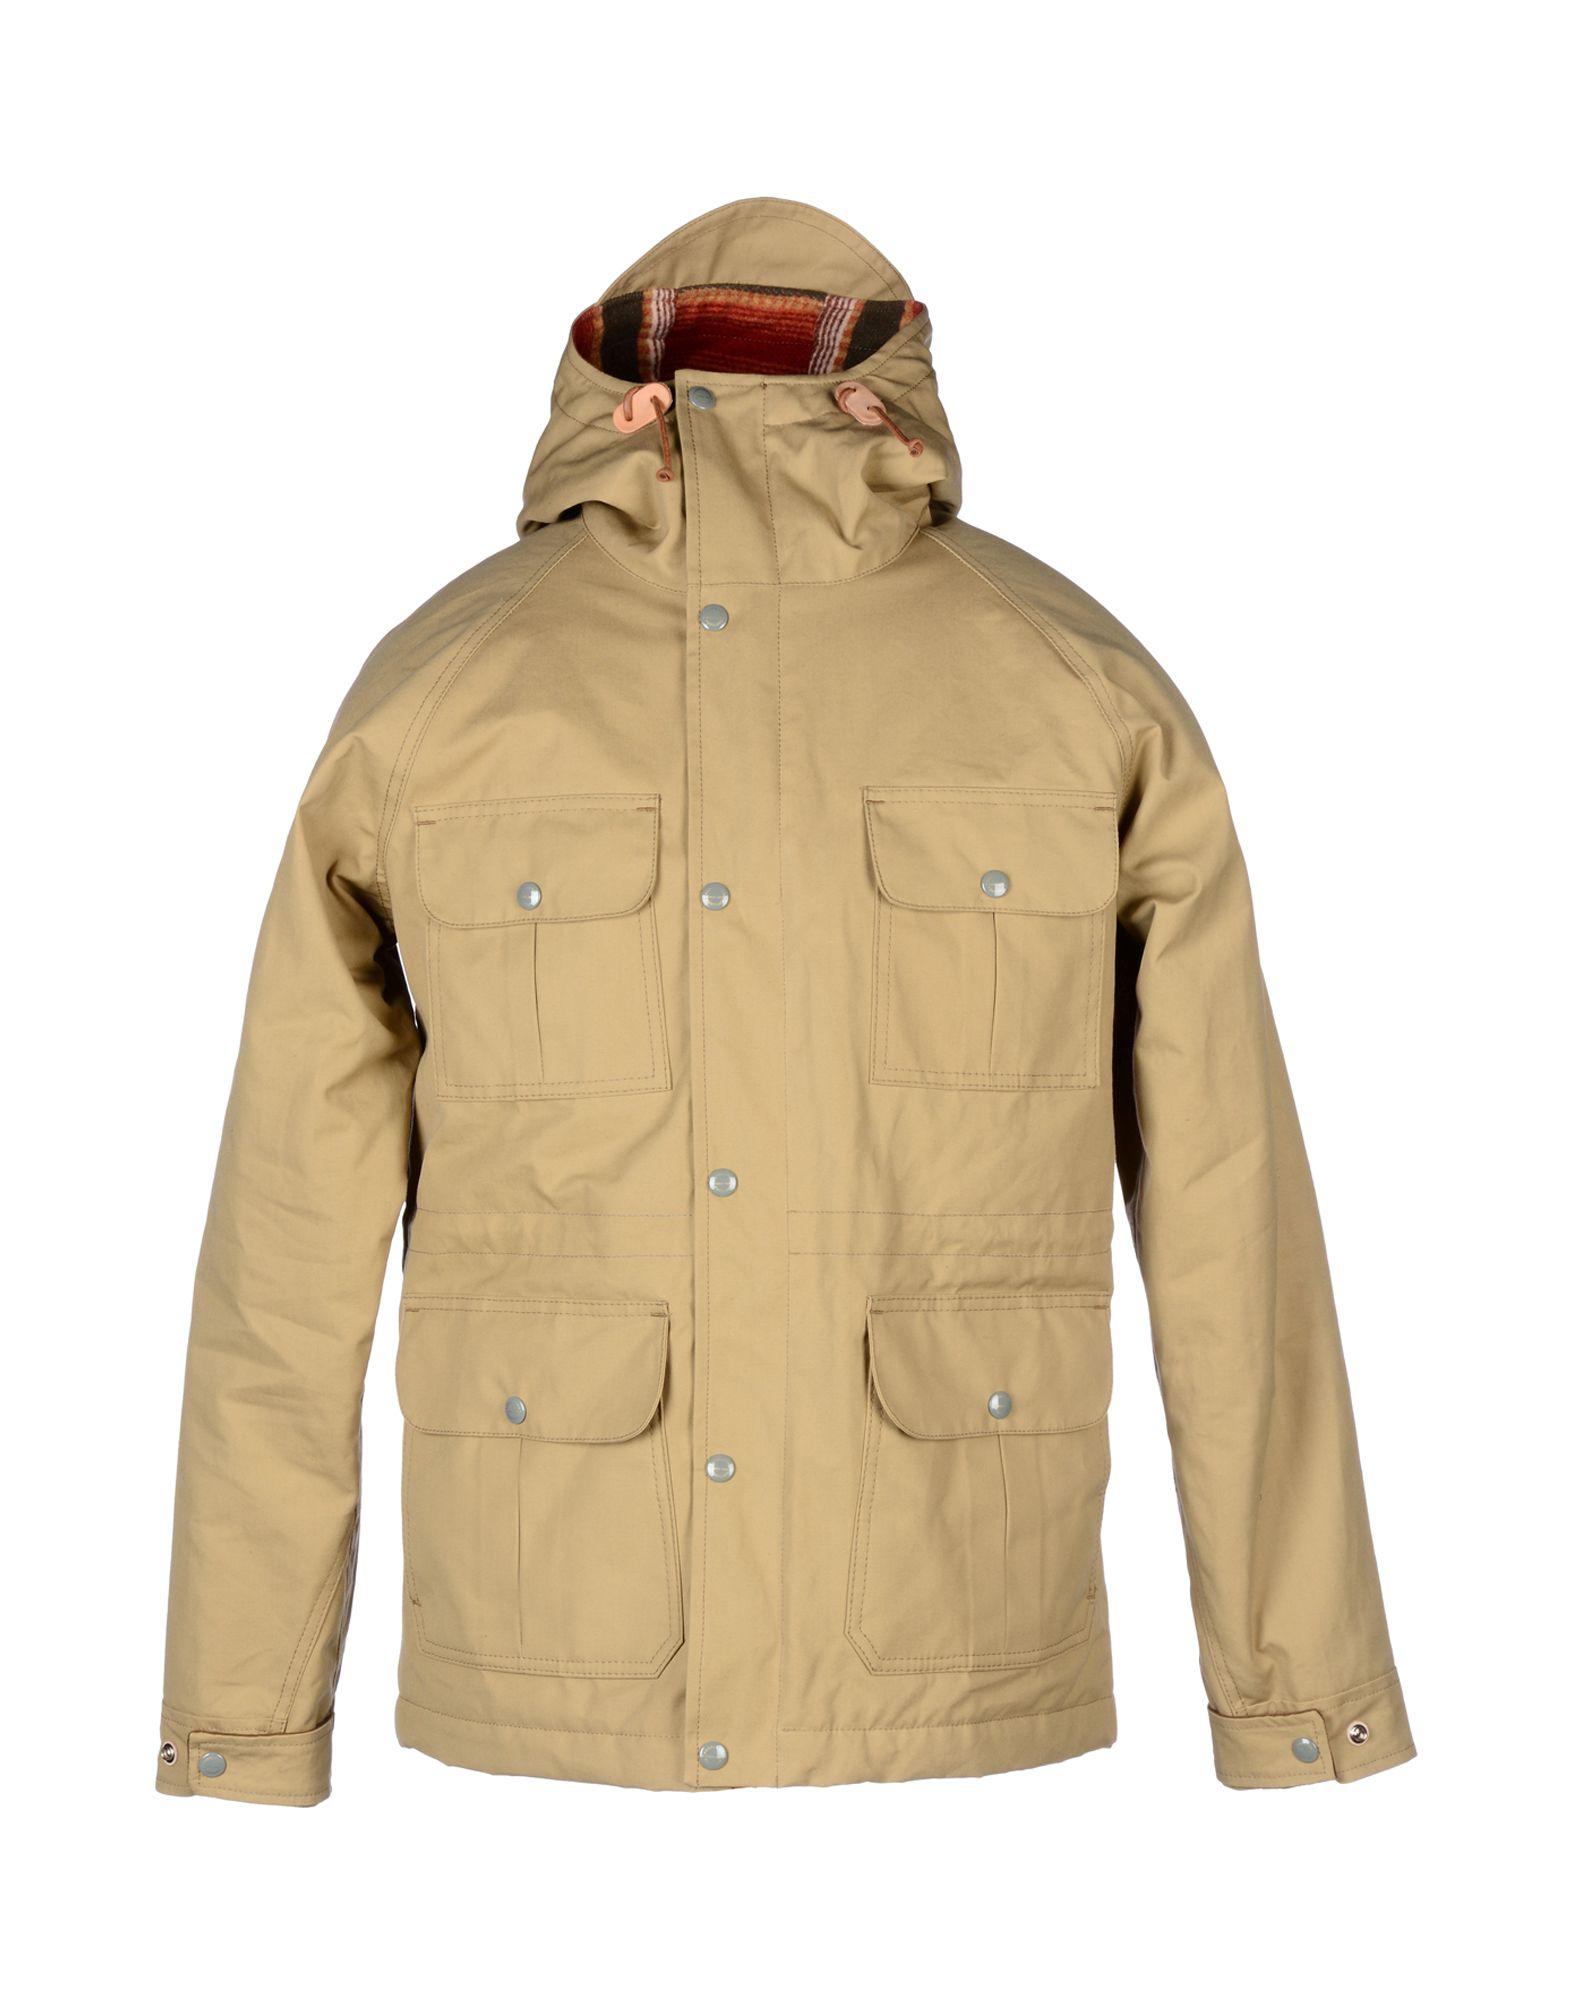 Lyst - Pendleton Jacket in Natural for Men